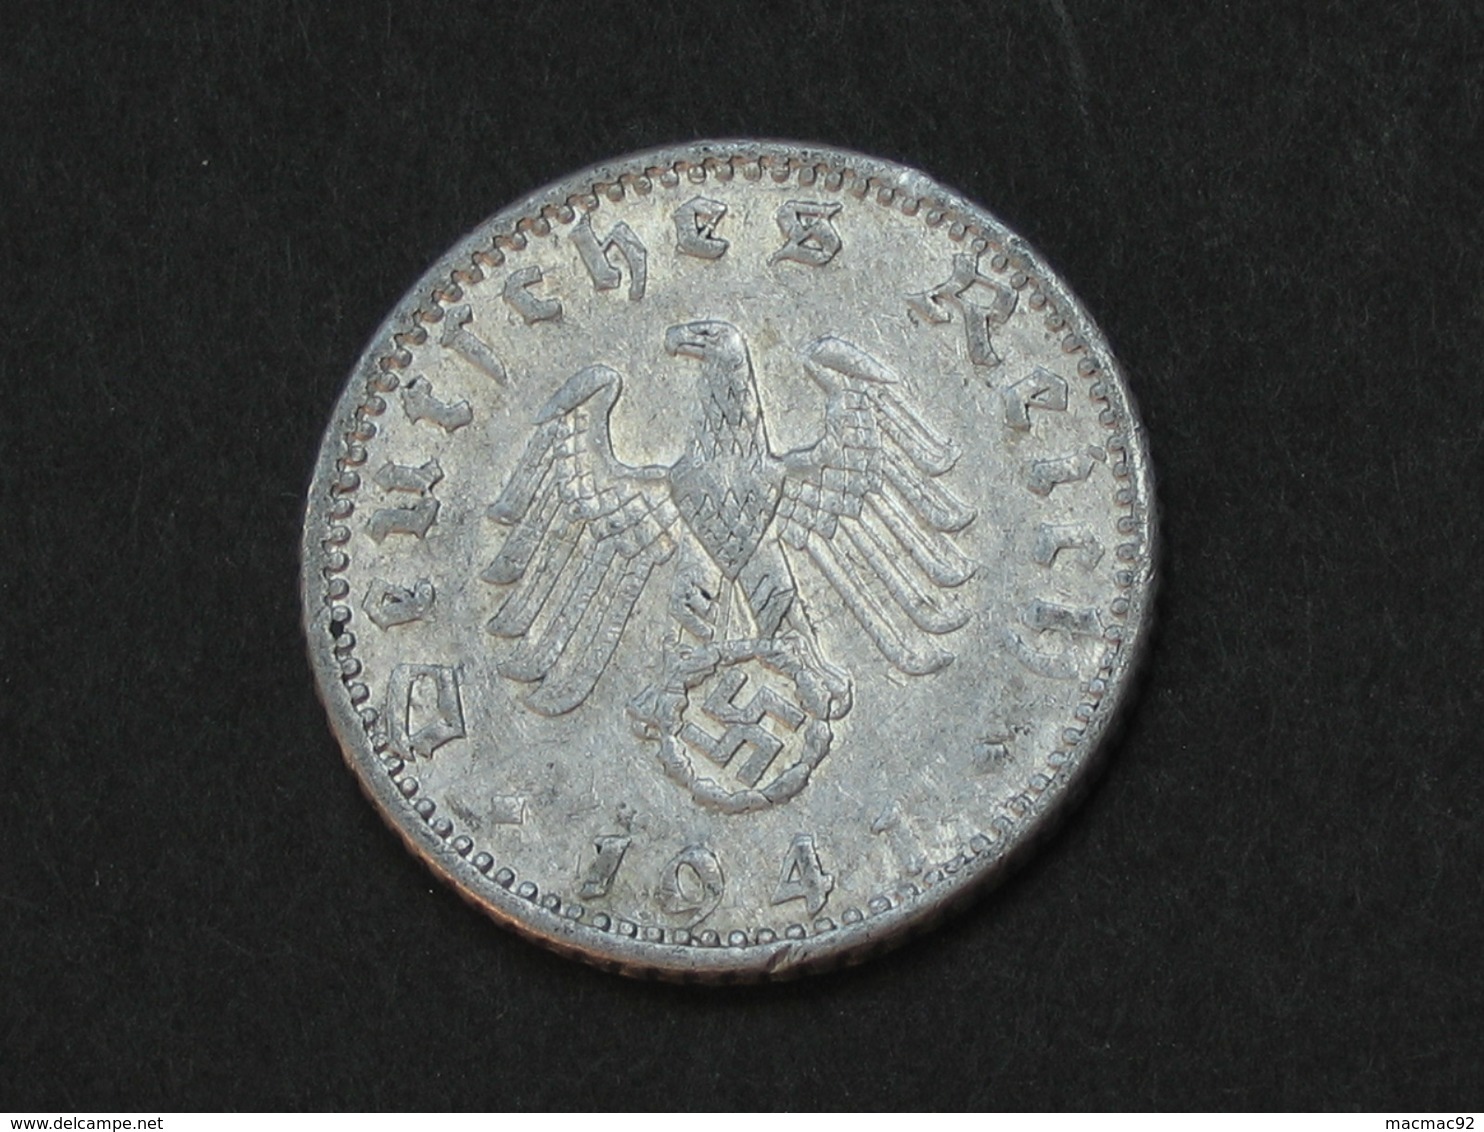 50 Reichspfennig 1941 A - Germany- Allemagne 3 Eme Reich   **** EN ACHAT IMMEDIAT **** - 50 Reichspfennig